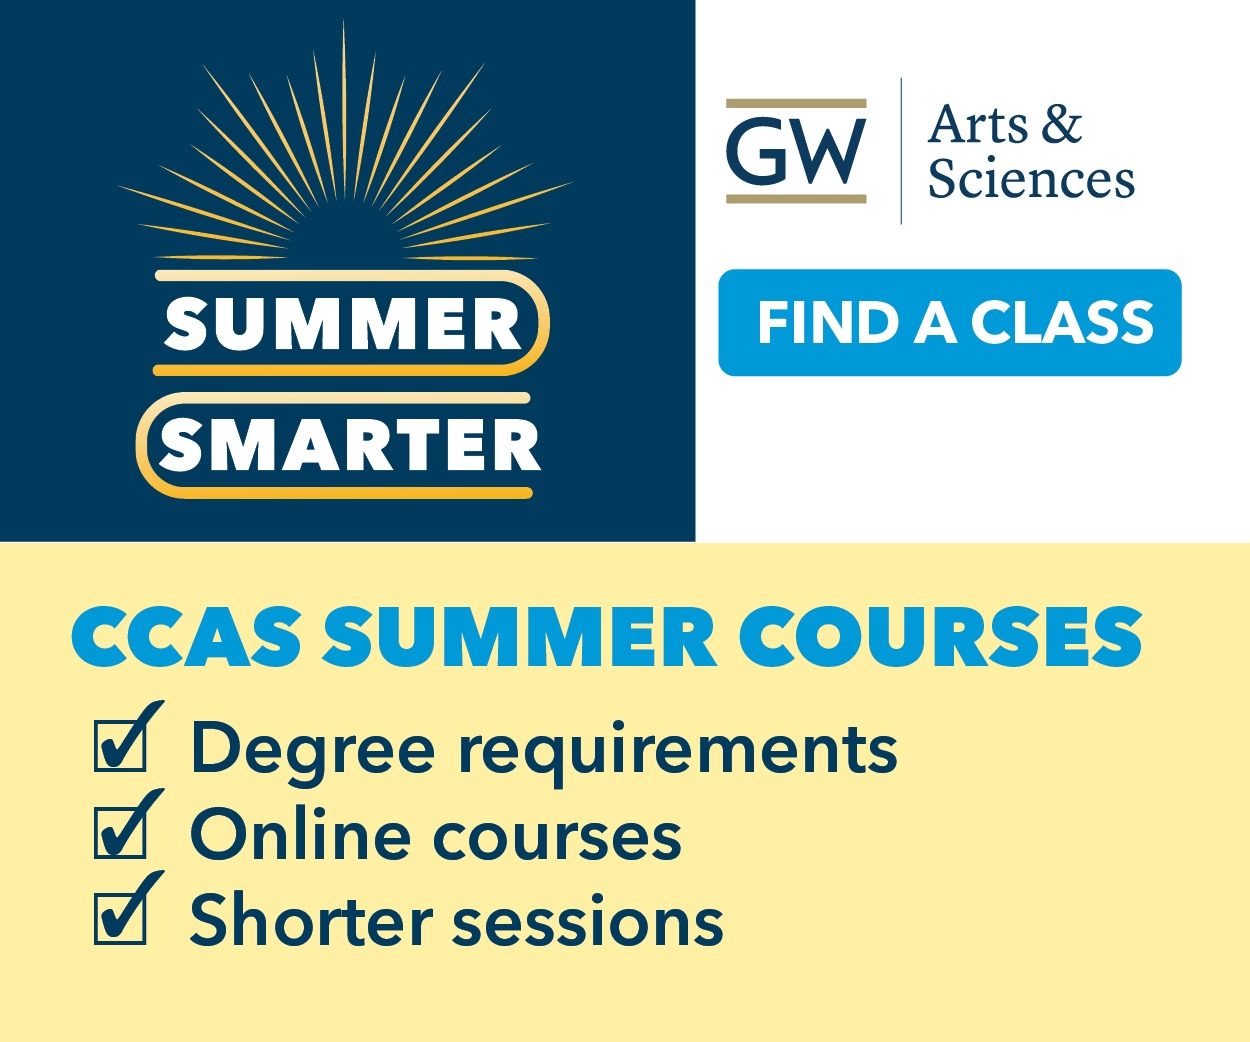 CCAS Summer Courses